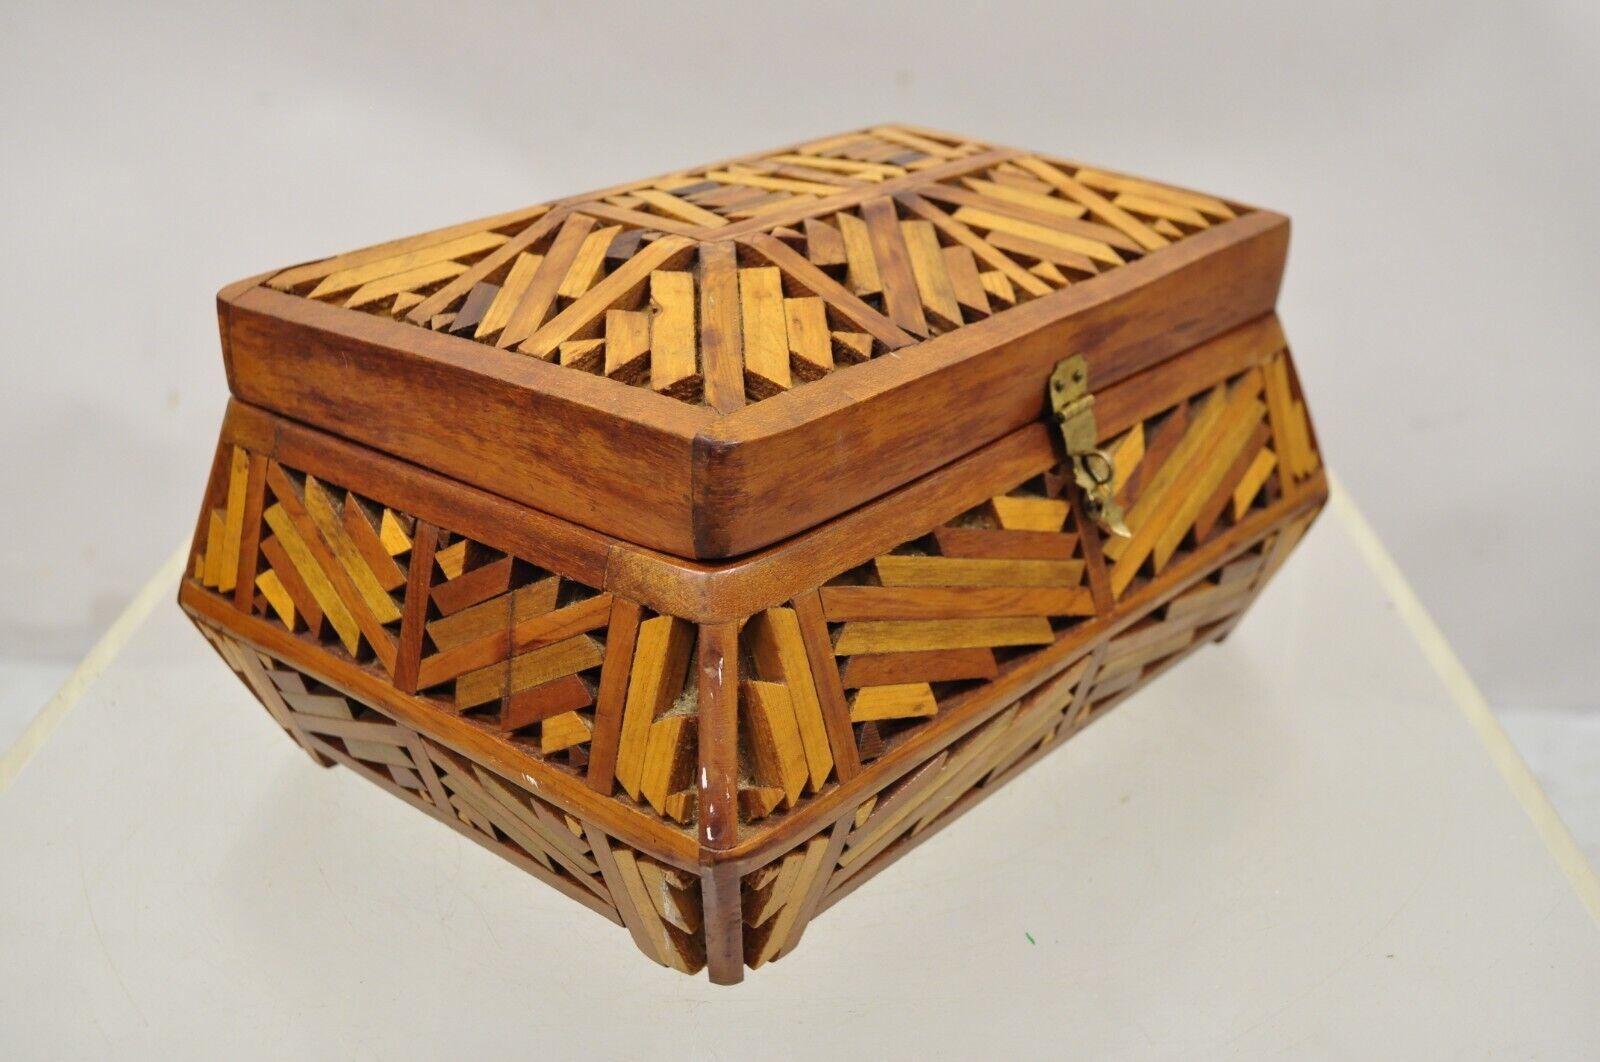 Vintage Wood Arts & Crafts tramp art folk art jewelry box trinket box. L'article comporte un miroir sur le couvercle intérieur, une construction en bois massif, un beau grain de bois, un très bel article vintage. Circa Mid 20th century. Mesures : 6